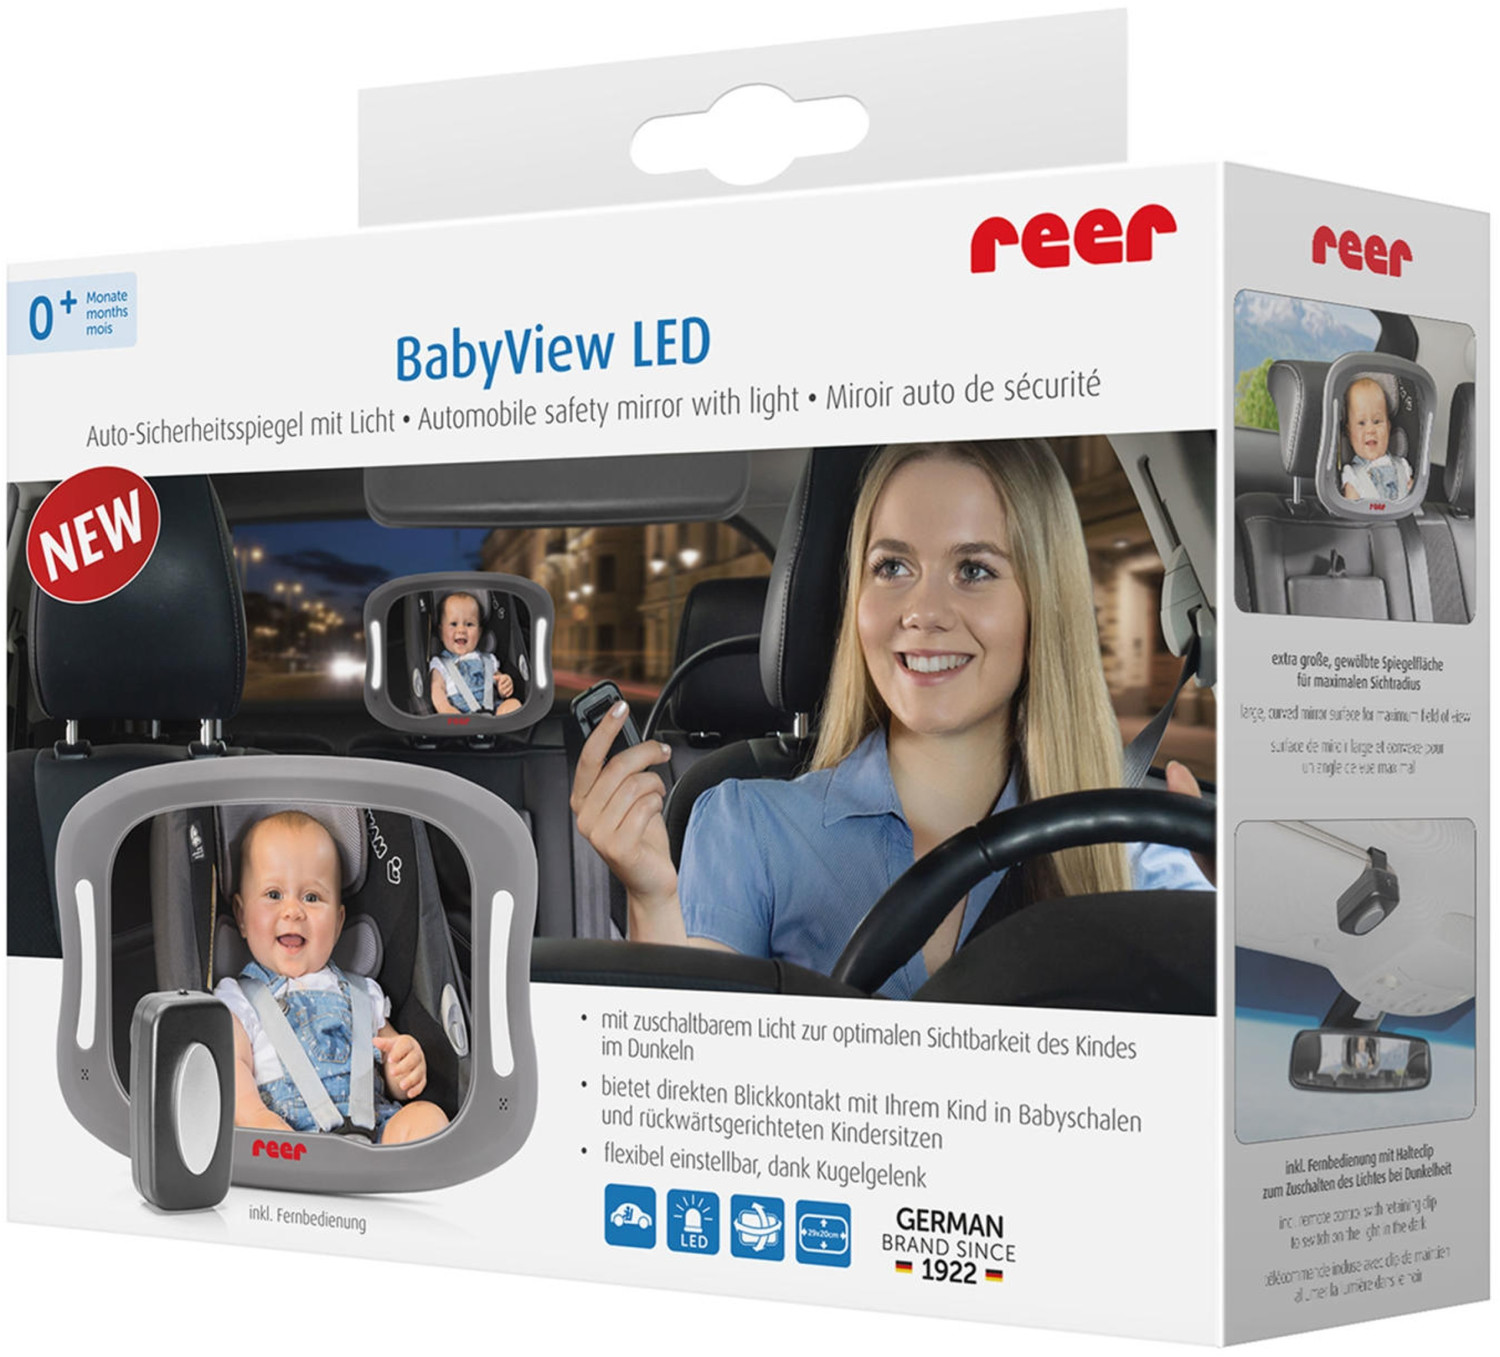 babycab - Auto-Sicherheitsspiegel mit Licht